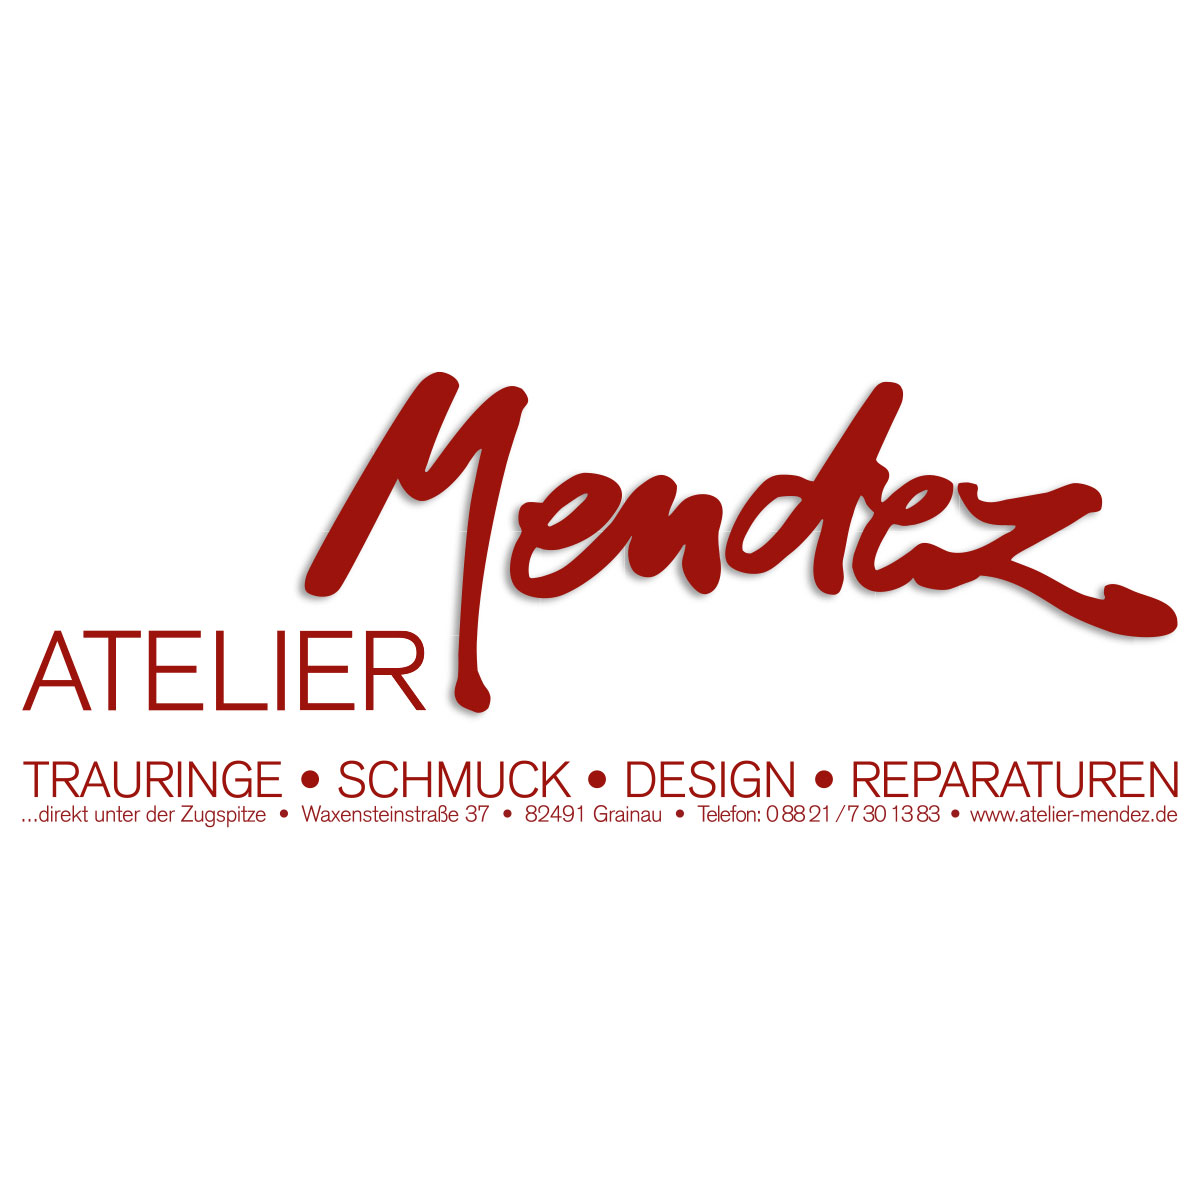 Atelier Mendez